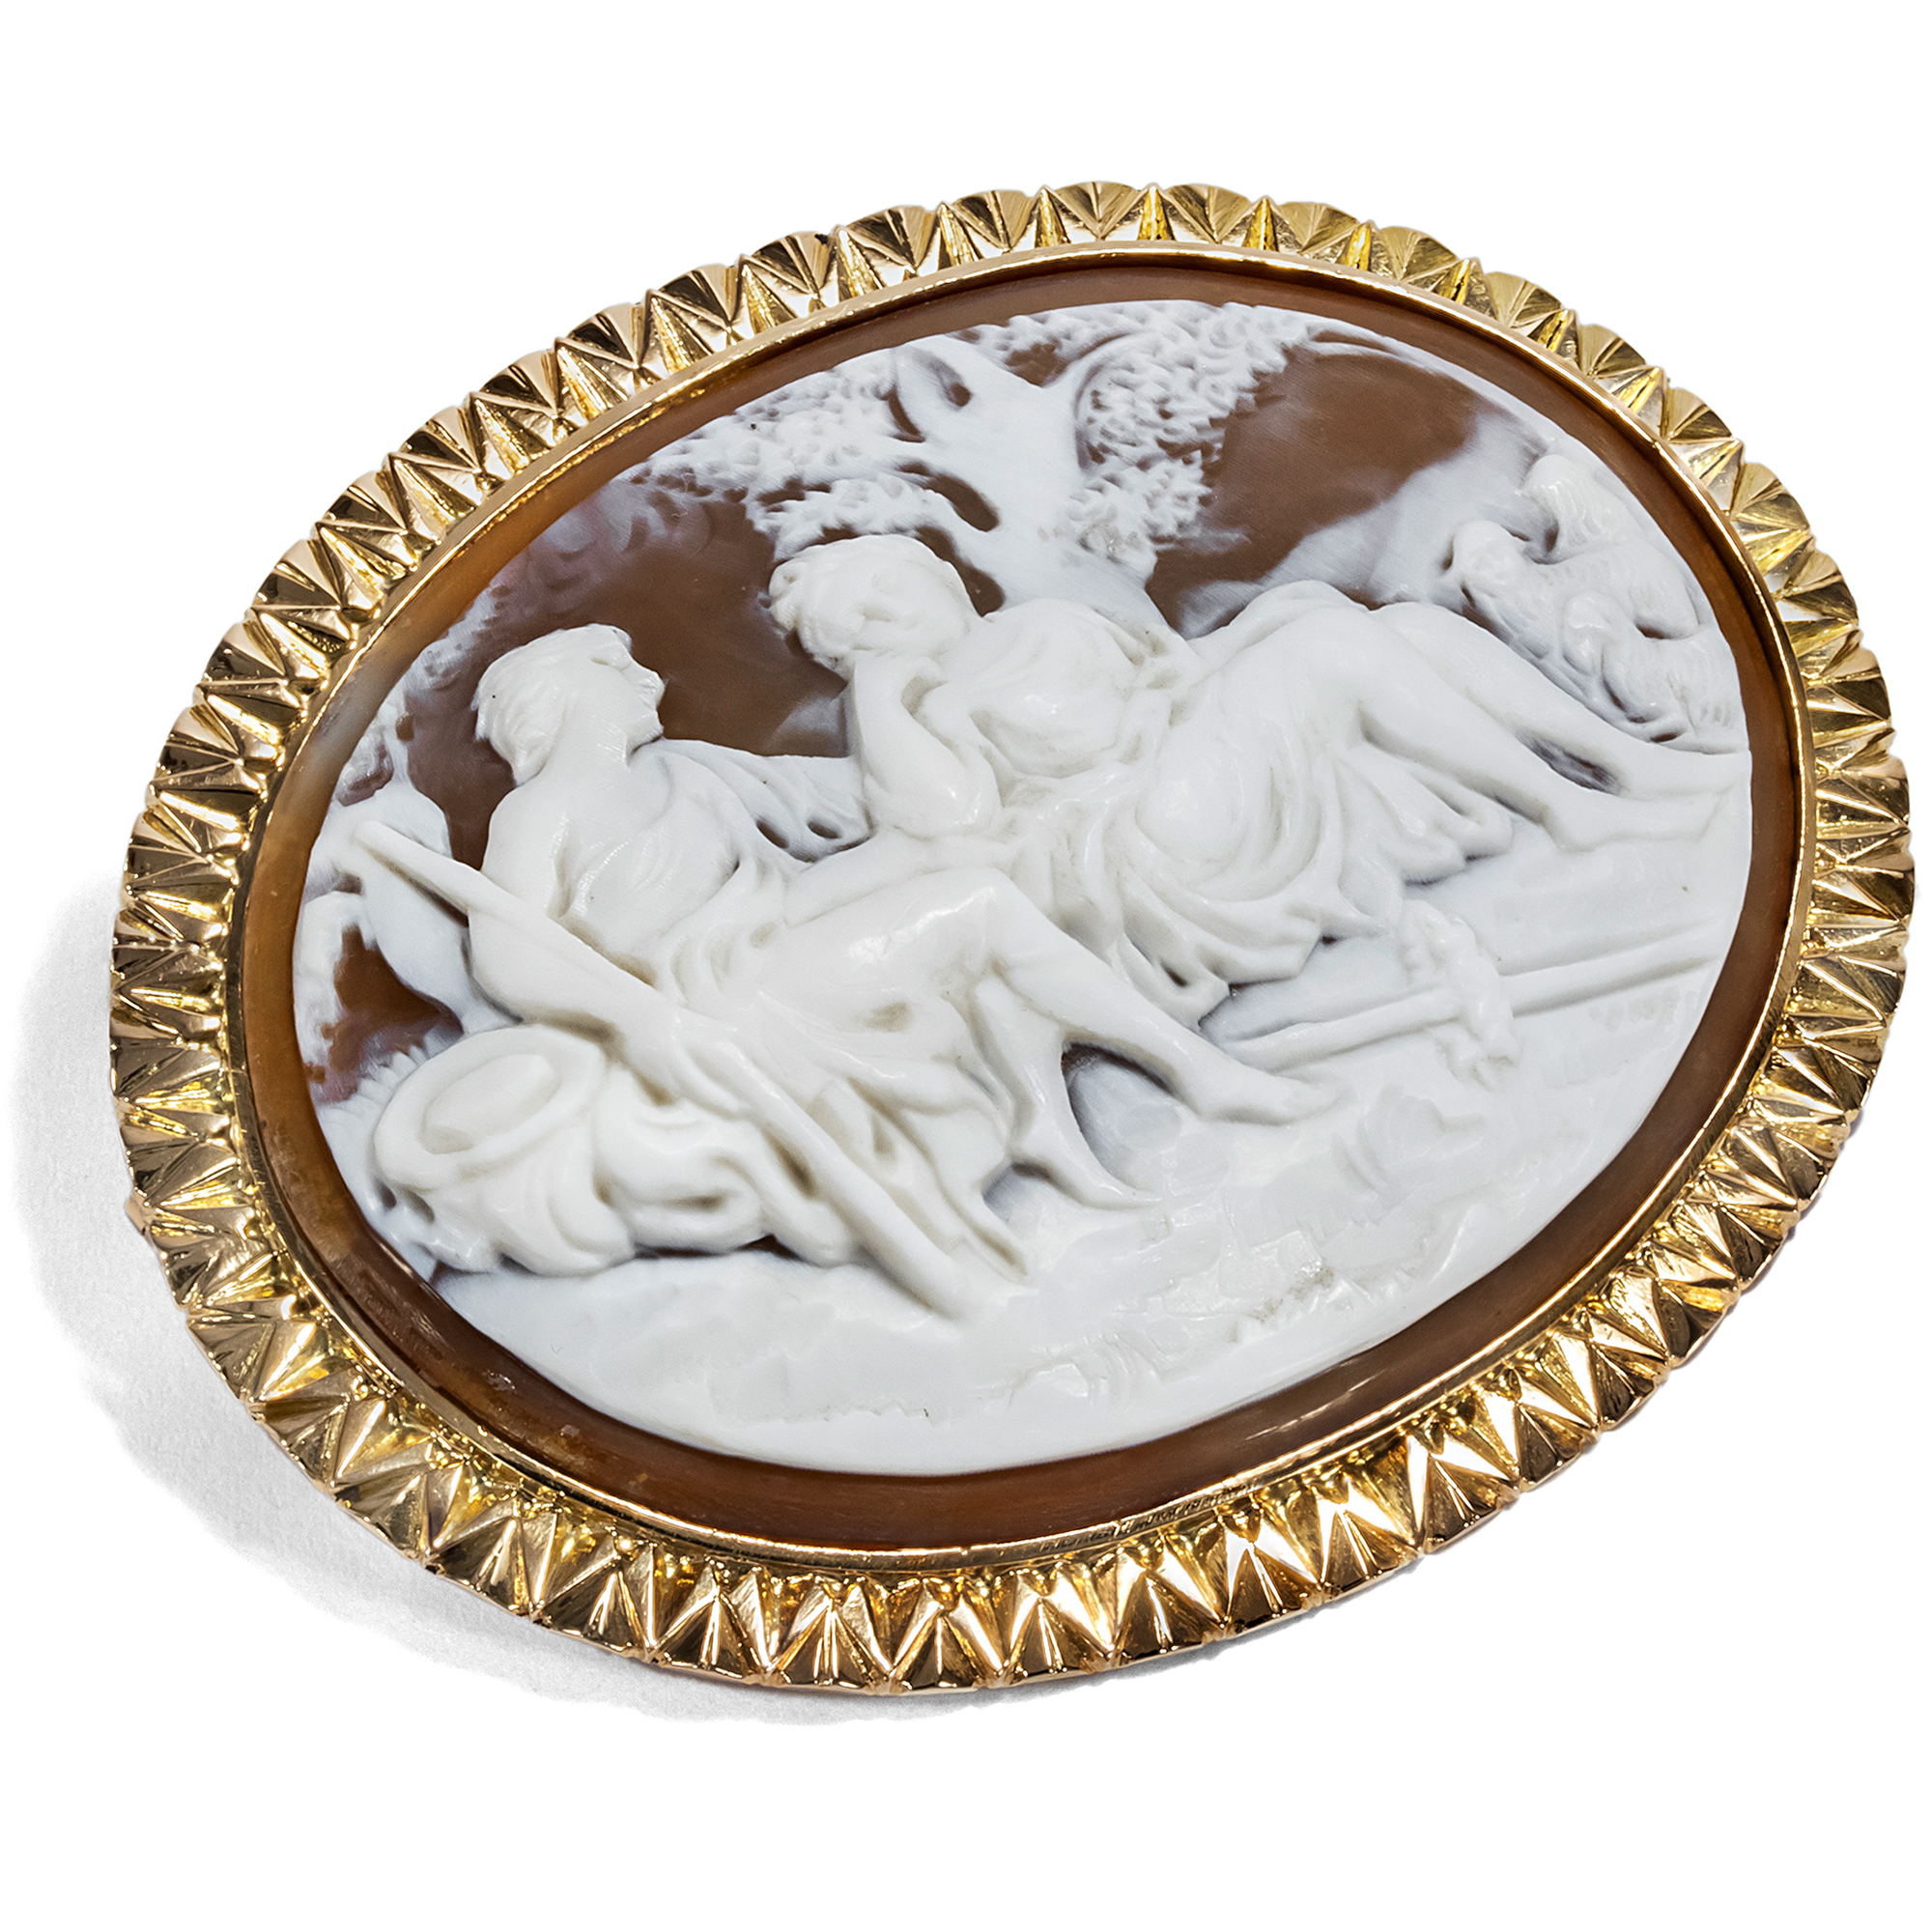 Bukolische Muschelgemme gefasst in Gold als Brosche, um 1875